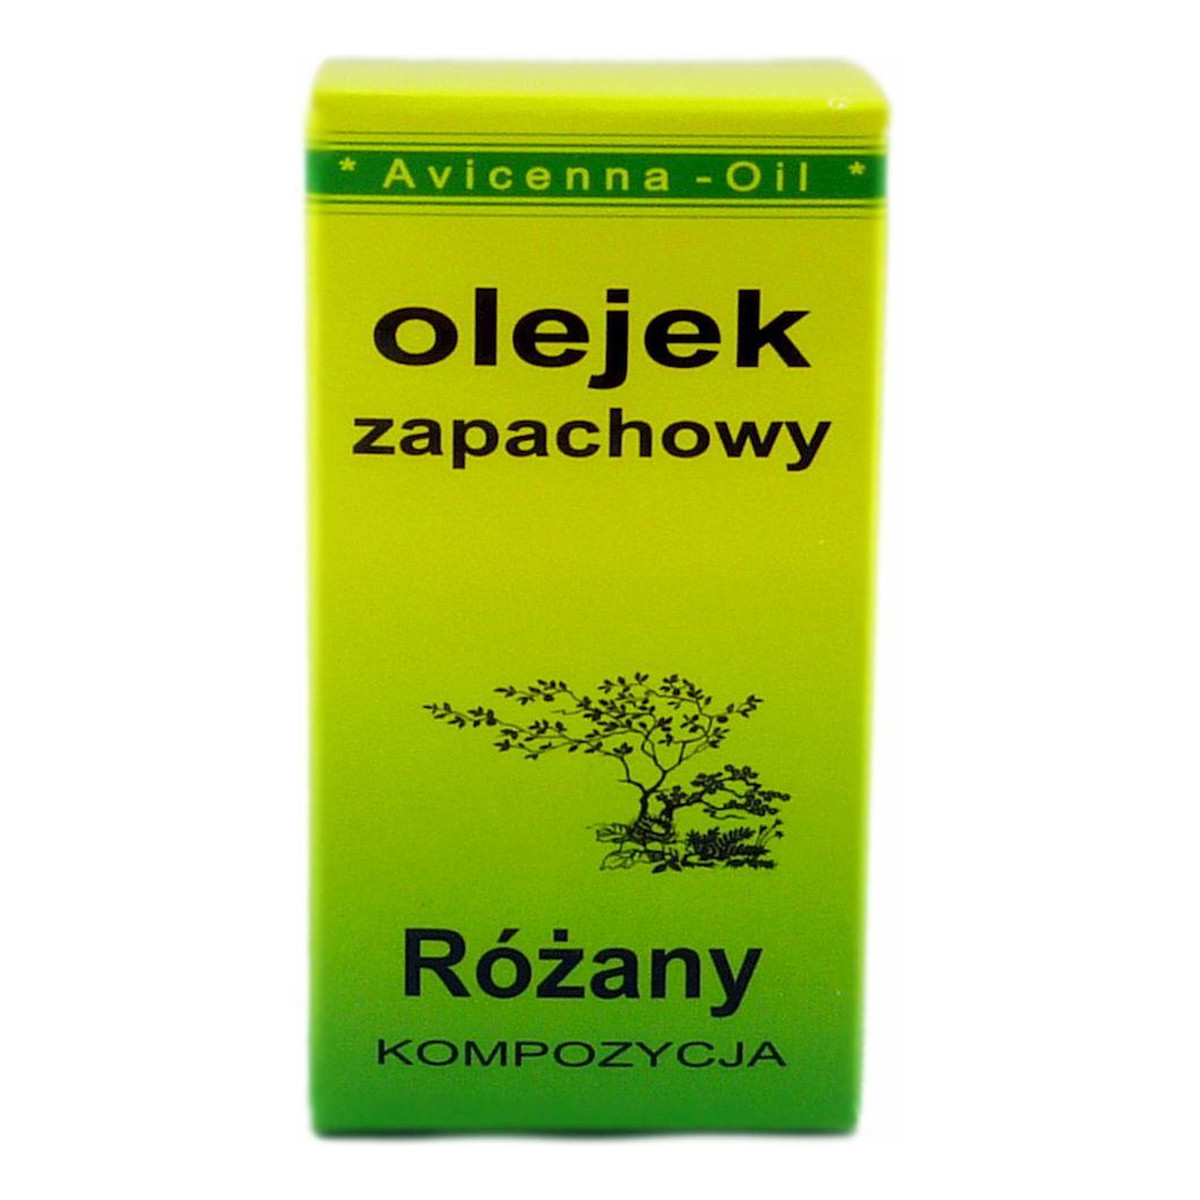 Avicenna-Oil Olejek Zapachowy kompozycja Różany 7ml